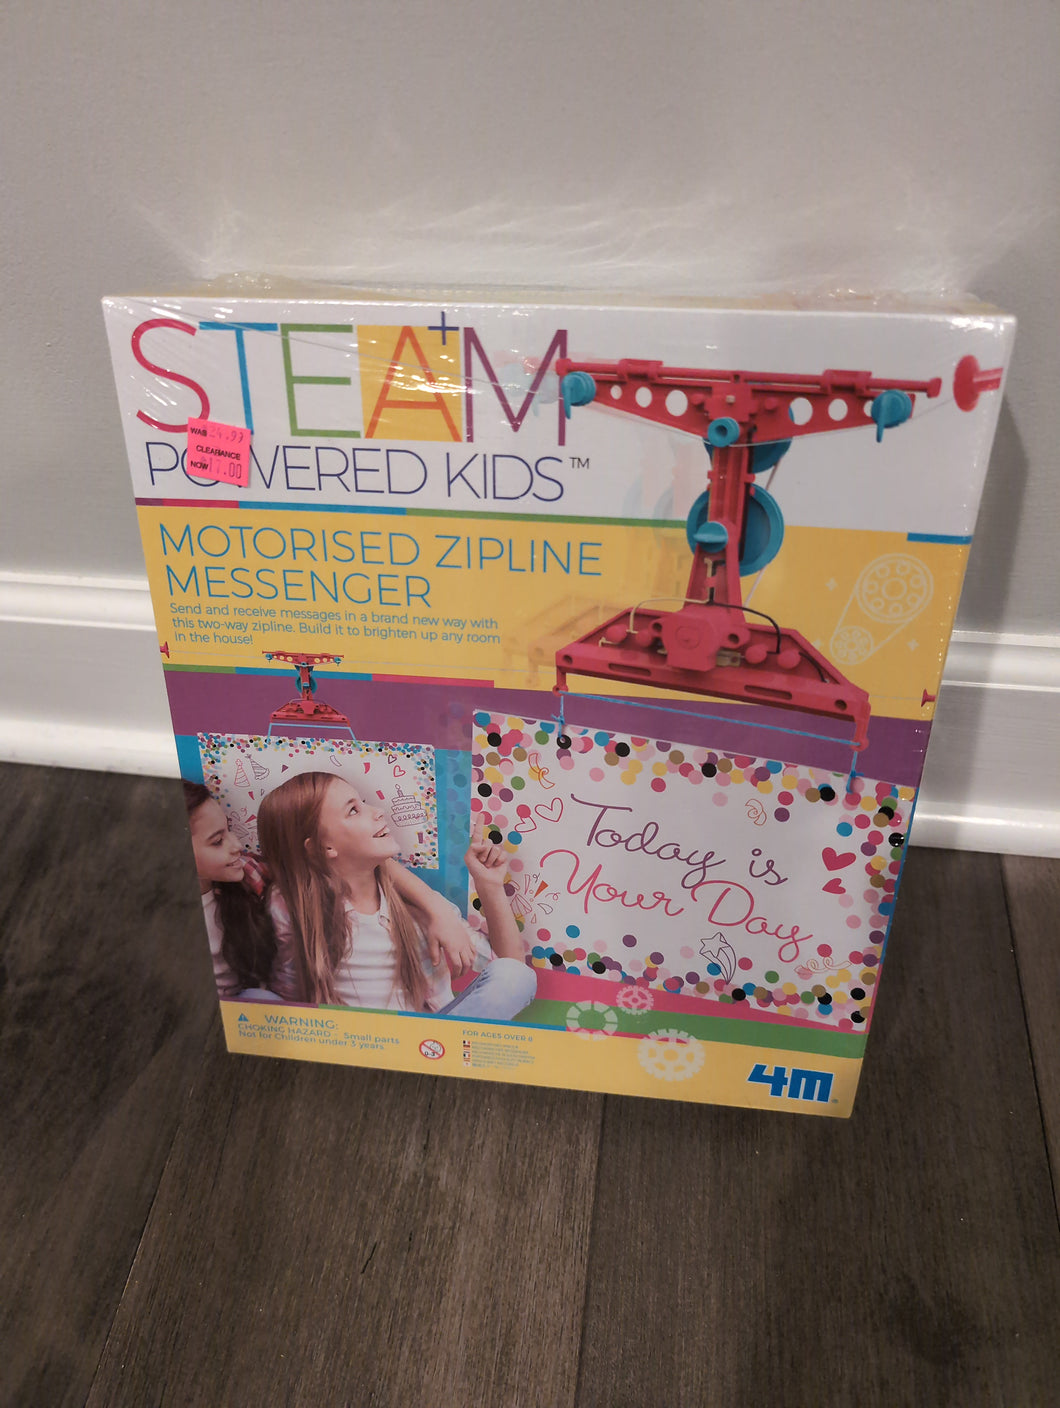 STEM / STEAM powered kids motorized Zipline messenger. Brand new in box, still sealed